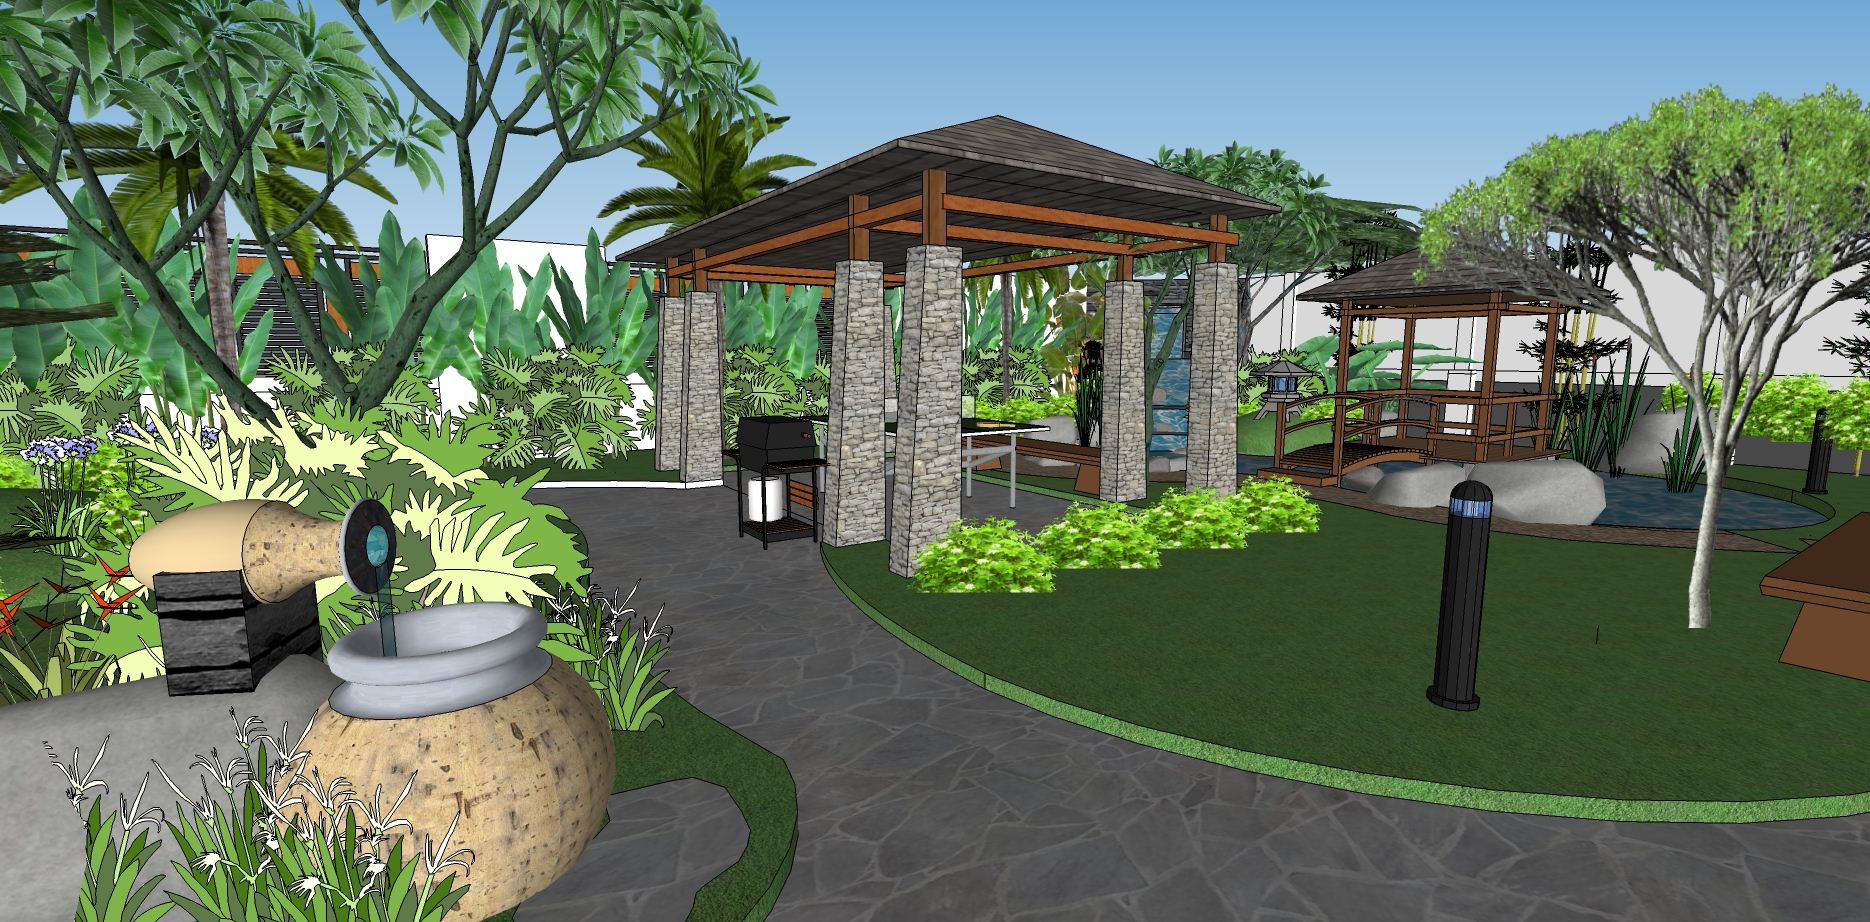 640 Desain Taman Tropis Depan Rumah Terbaru